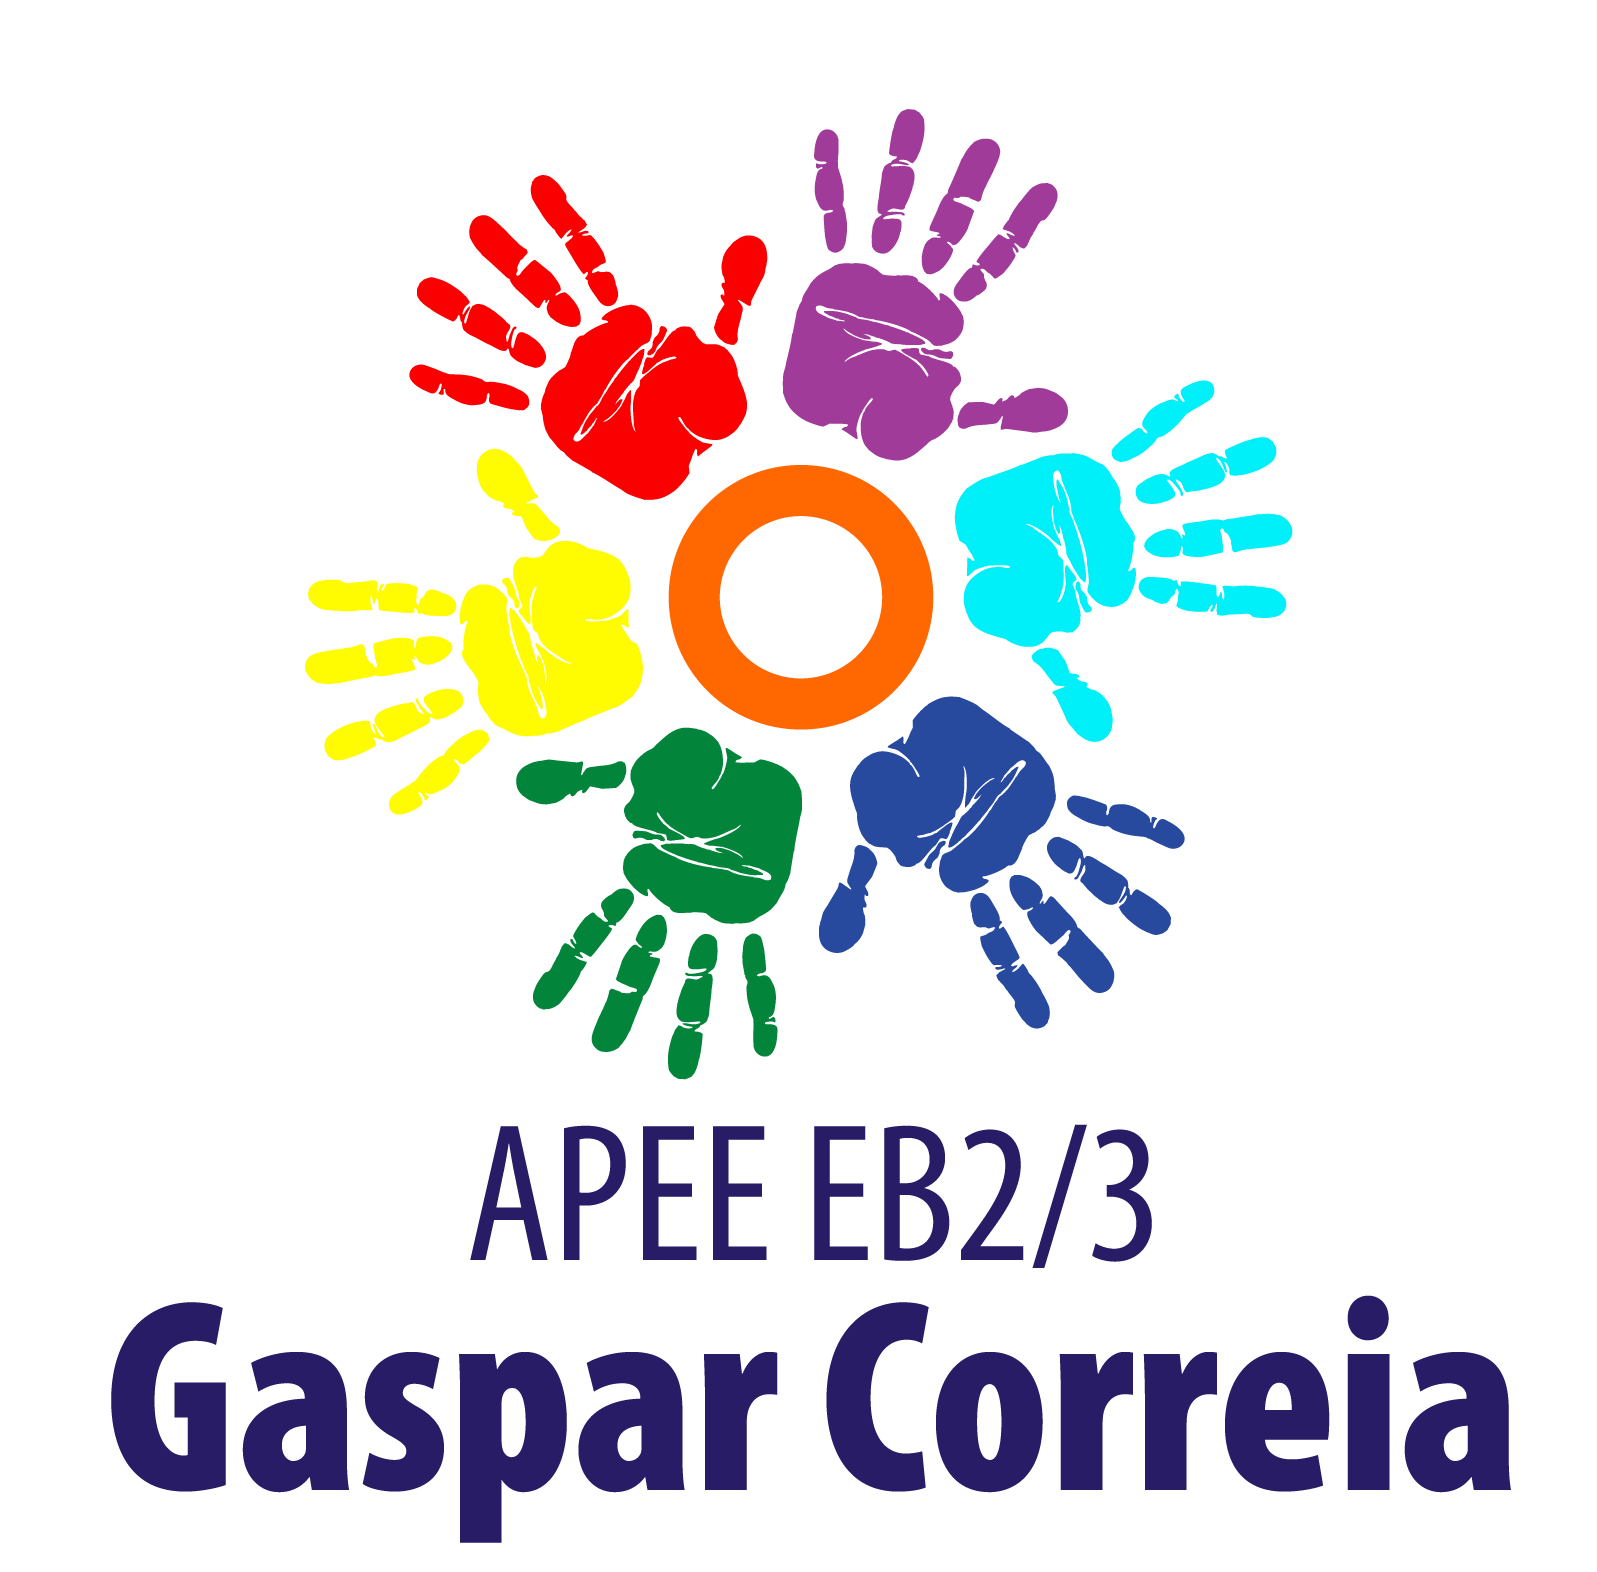 APEE_GASPAR_CORREIA1